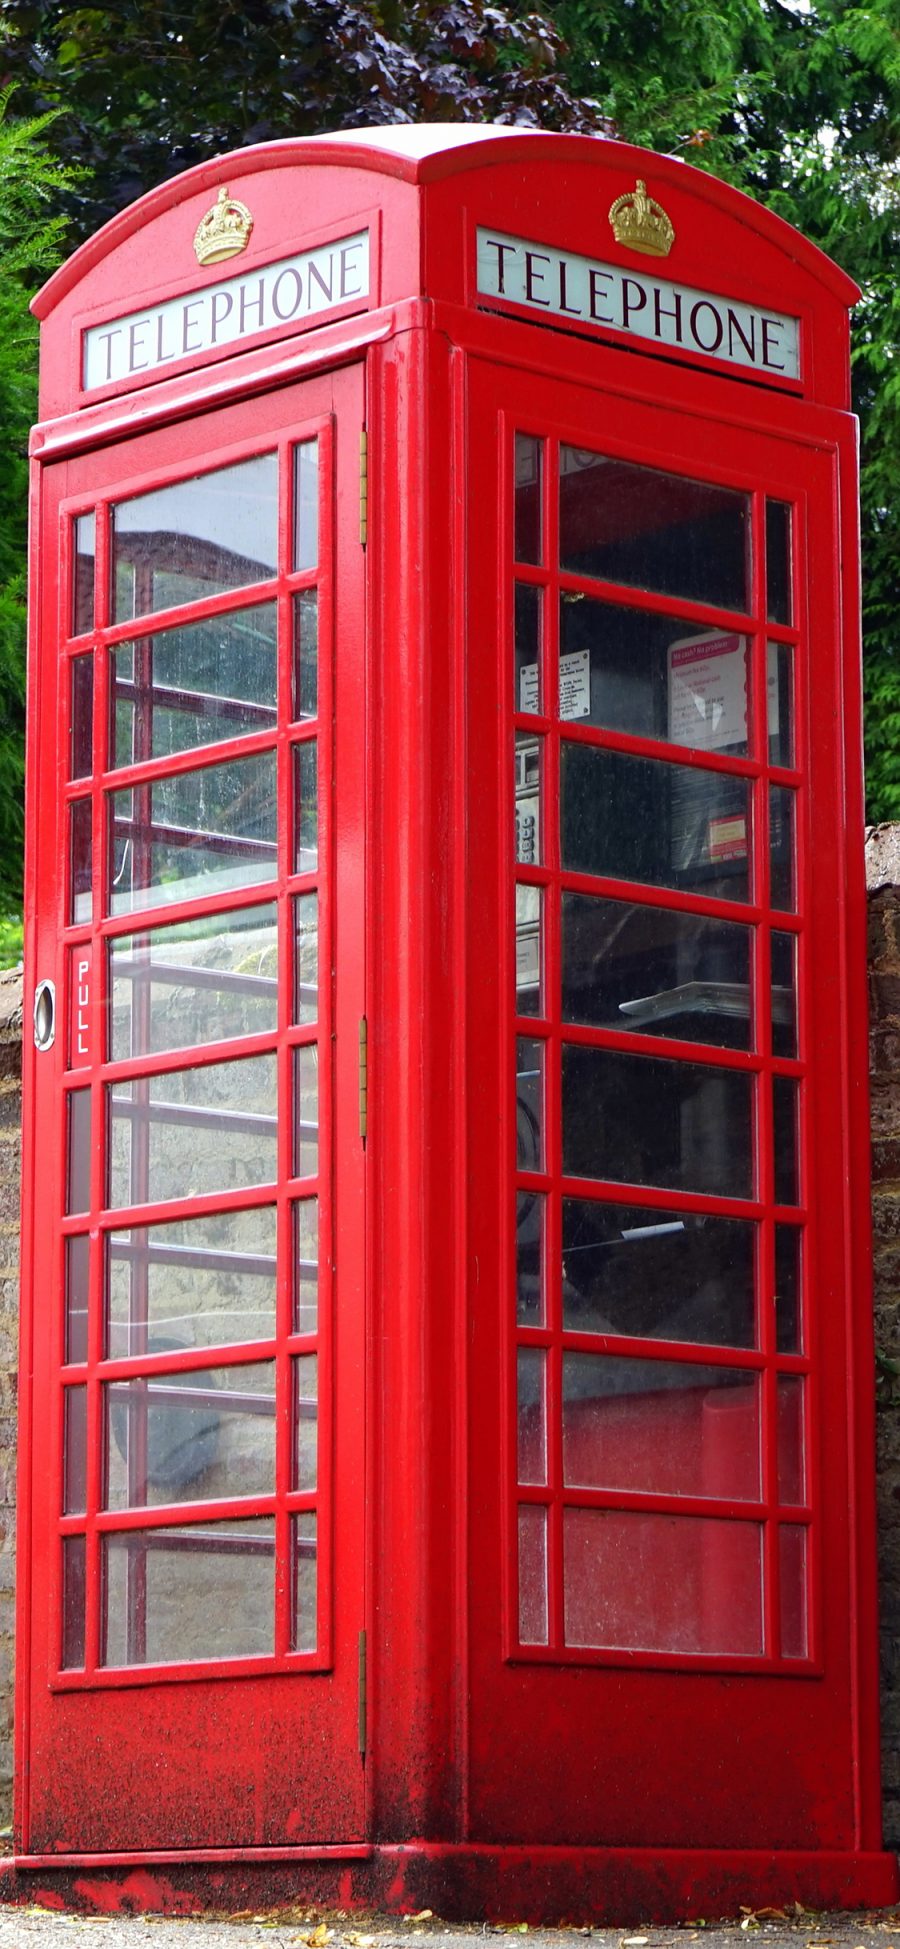 [2436×1125]街边 电话亭 红色 欧洲风情 苹果手机壁纸图片